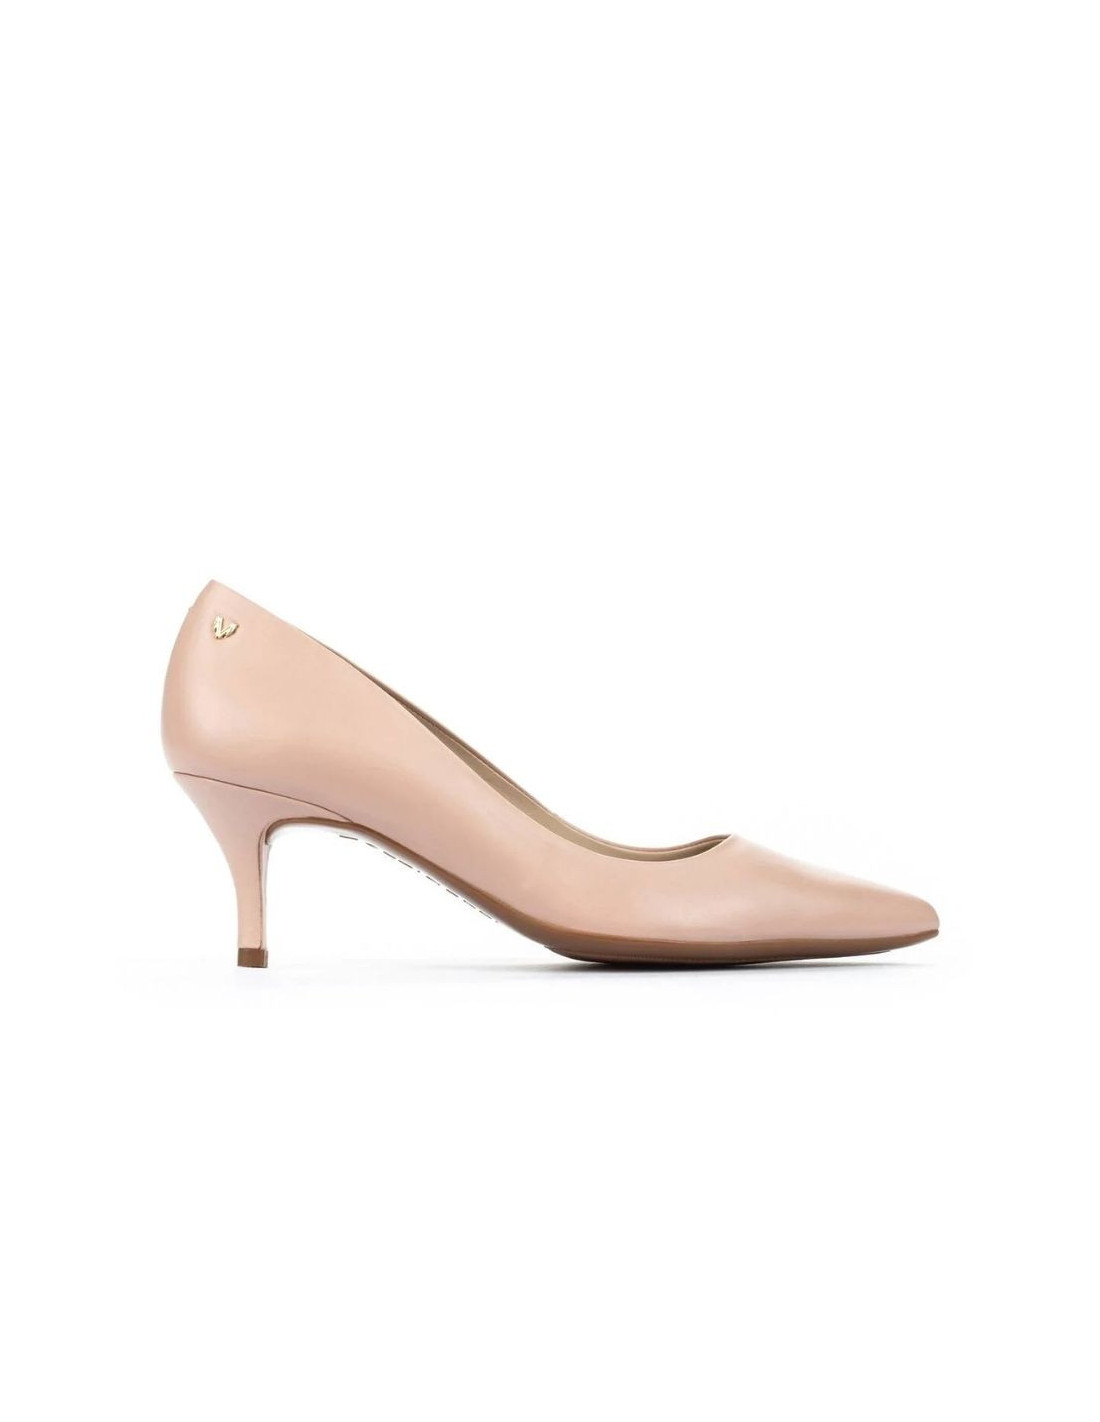 Zapatos Fontaine color nude para mujer de Martinelli - Tienda Online